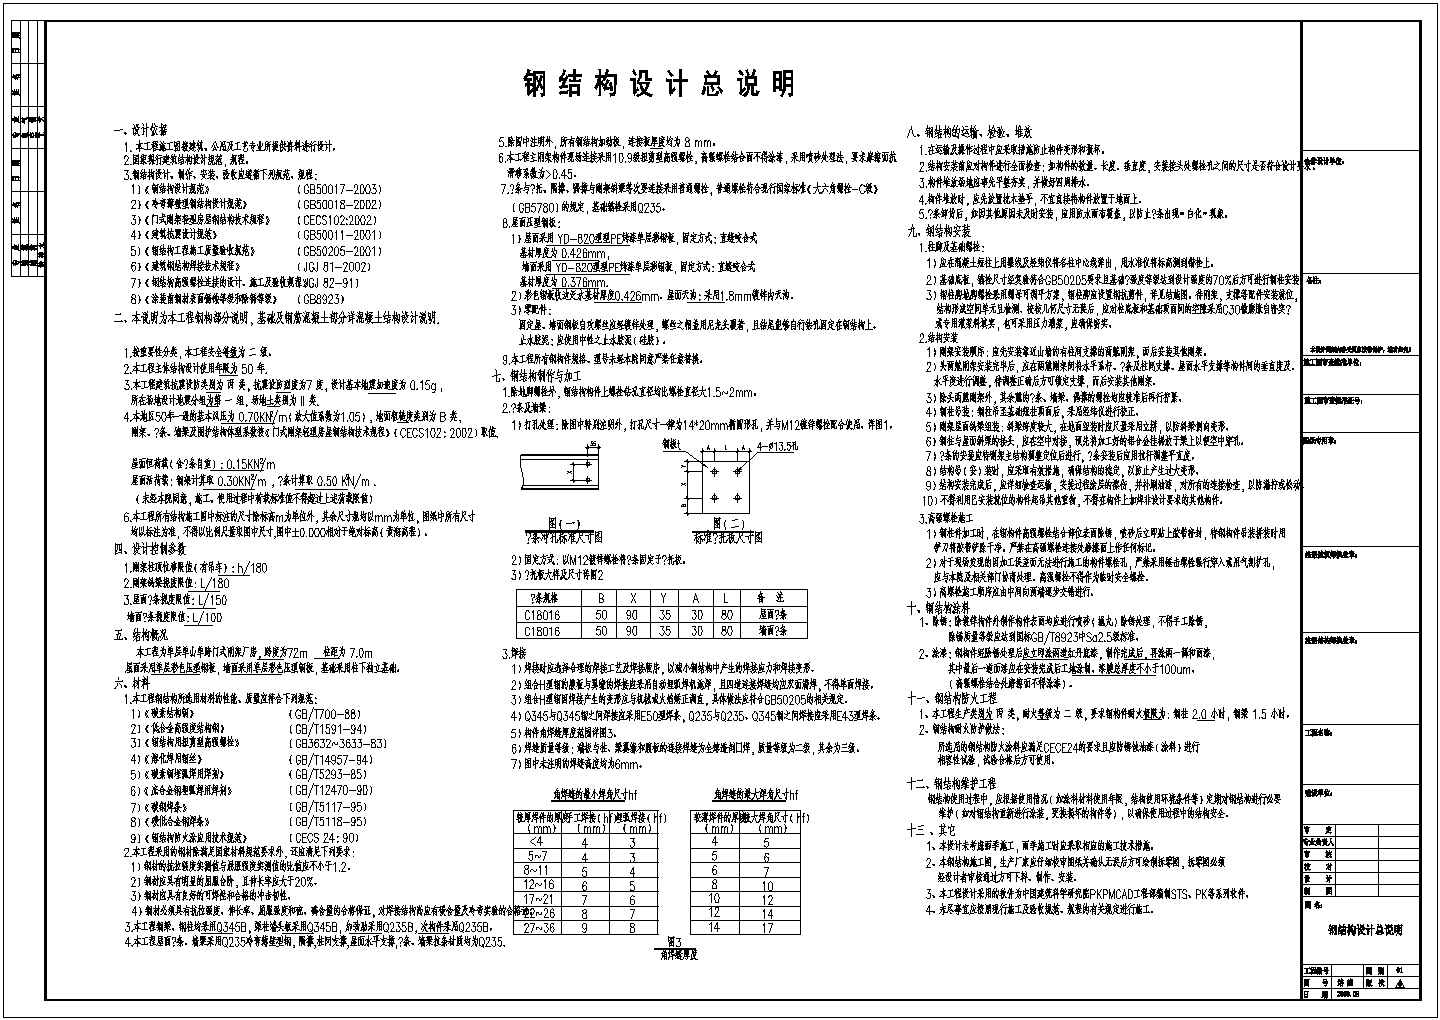 广泰翔二期居民住宅详细建筑施工图